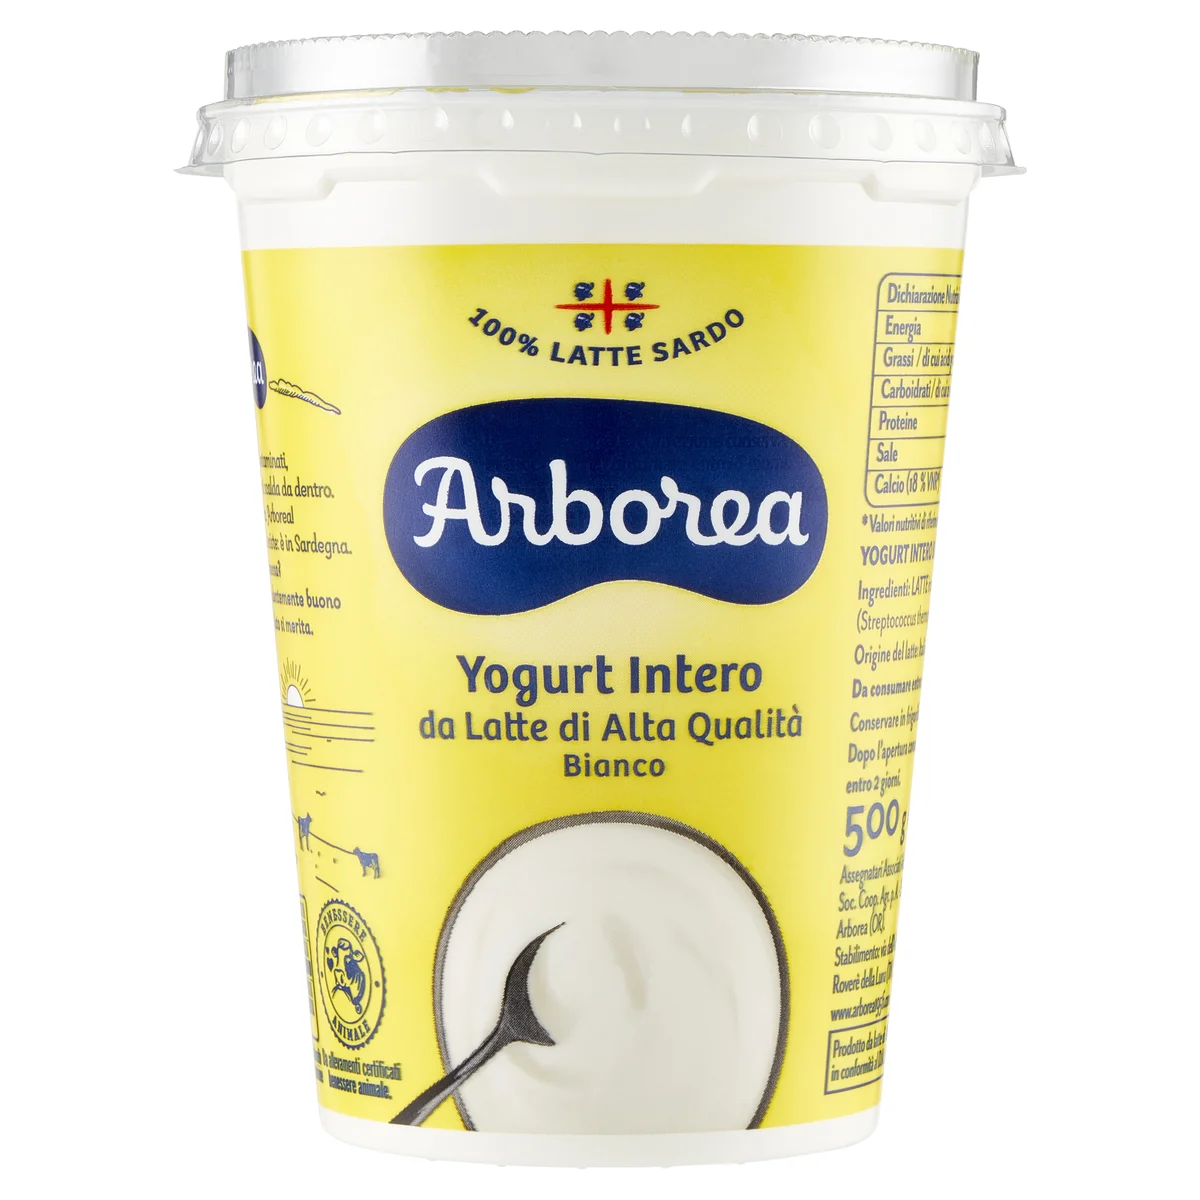 Arborea Yogurt Intero da Latte di Alta Qualità Bianco 500 g